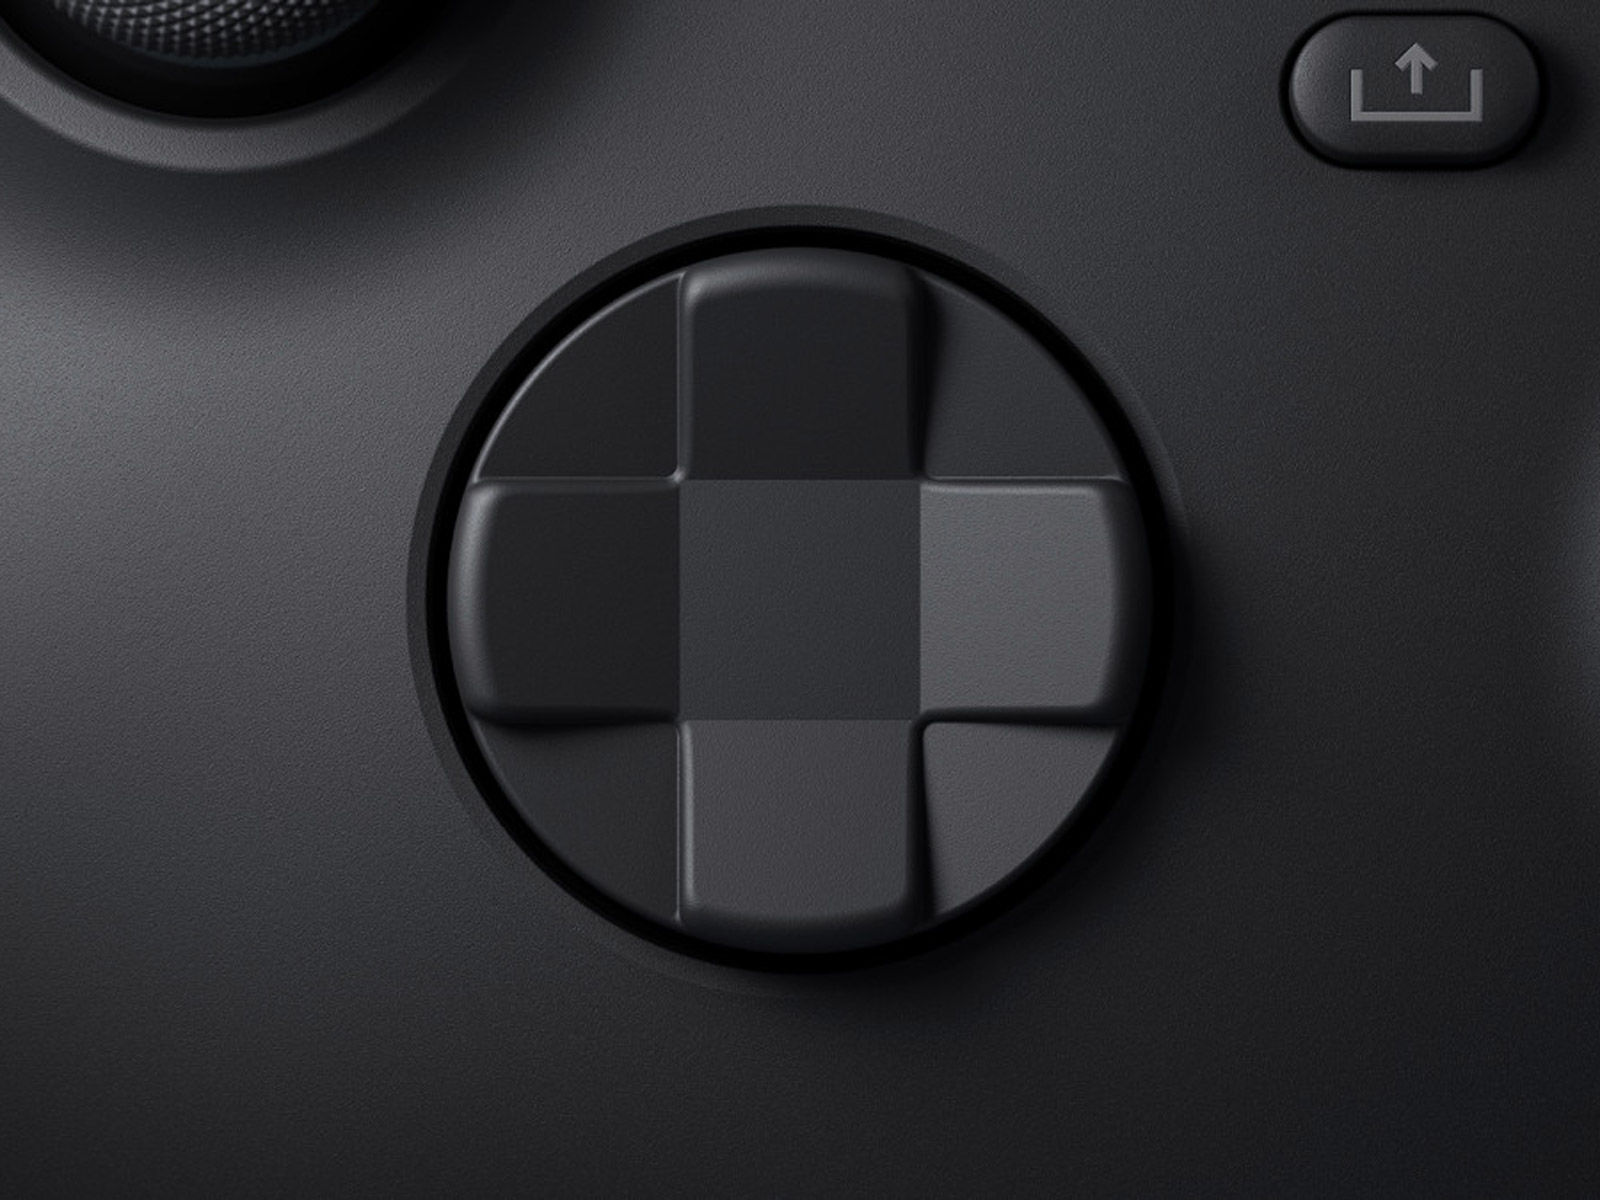 No krzyżak… - Nowy pad do Xbox Series X ma być szybki, obsłuży bluetooth - wiadomość - 2020-03-17